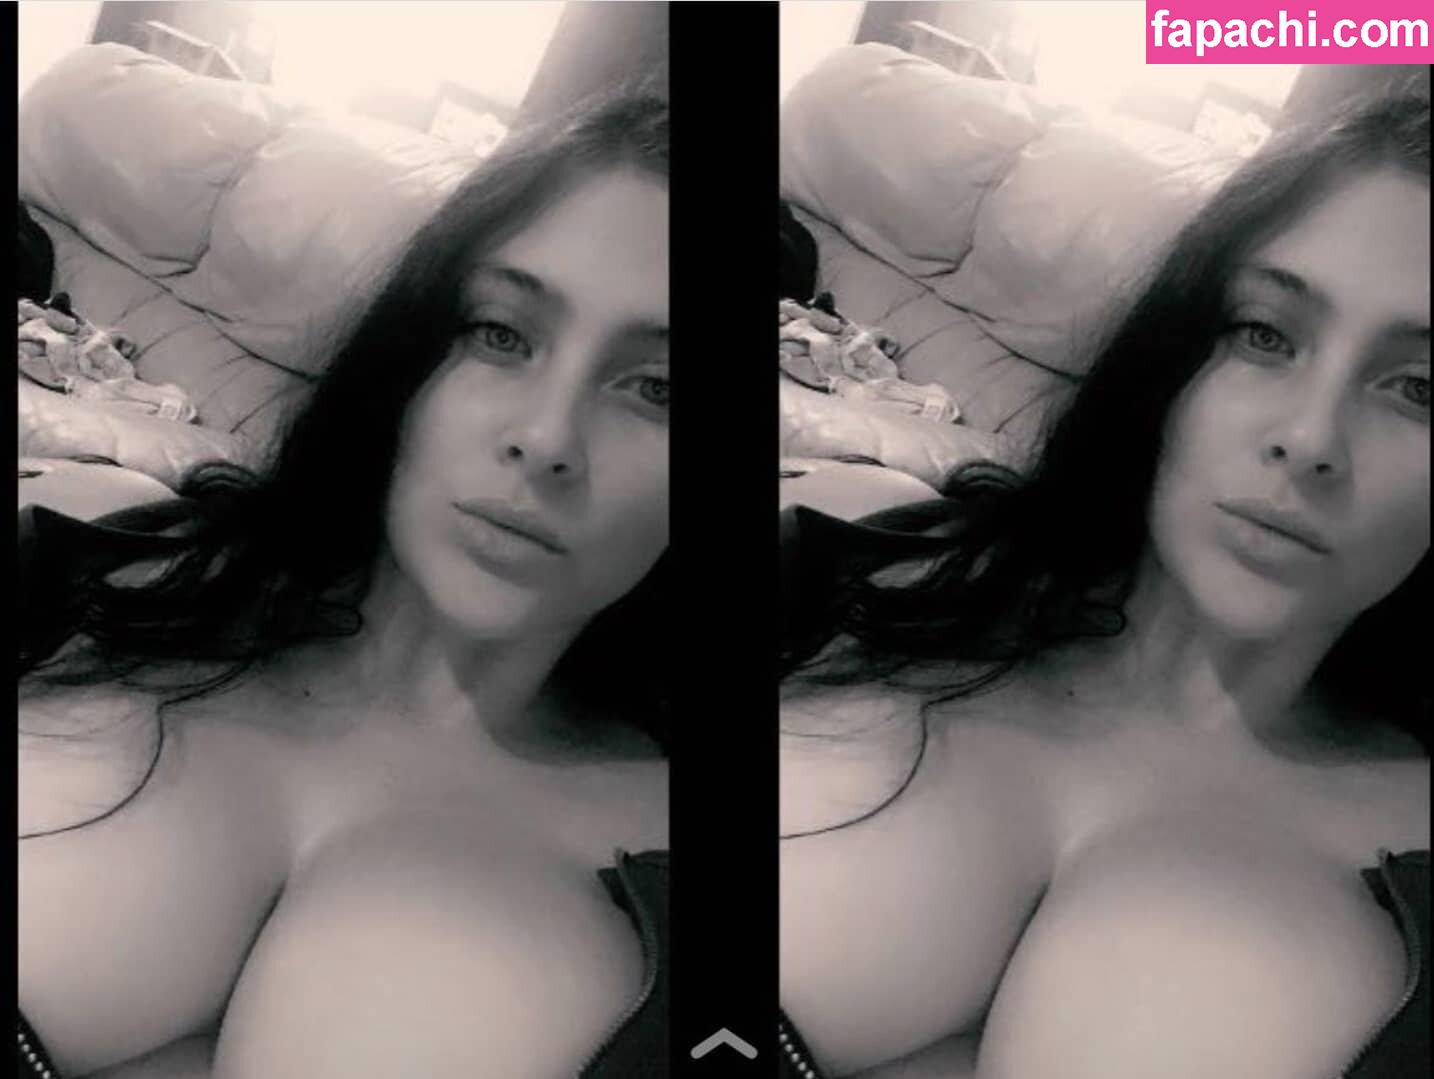 Lauren Modra / littlemissloz / lmisslozpriv leaked nude photo #0316 from OnlyFans/Patreon